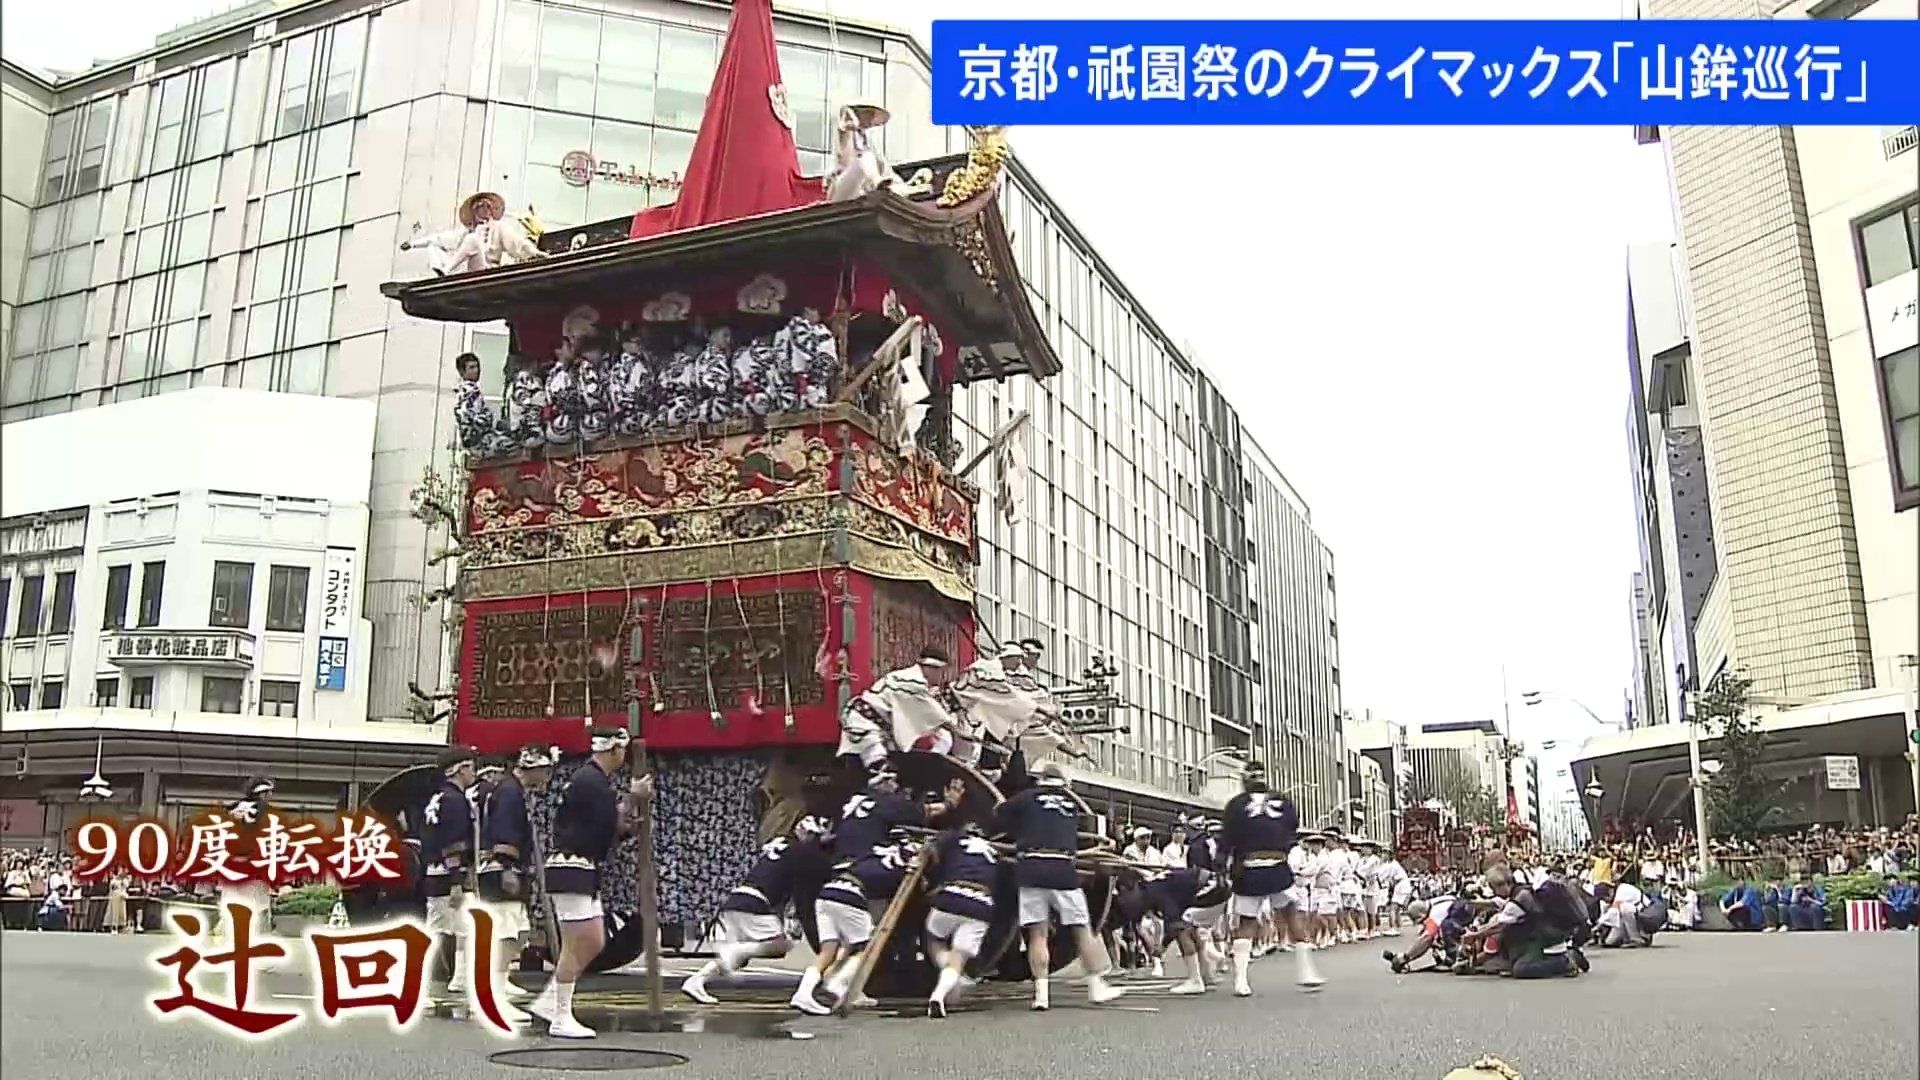 京都・祇園祭のクライマックス「山鉾巡行」 最大の見せ場「辻回し」など披露される